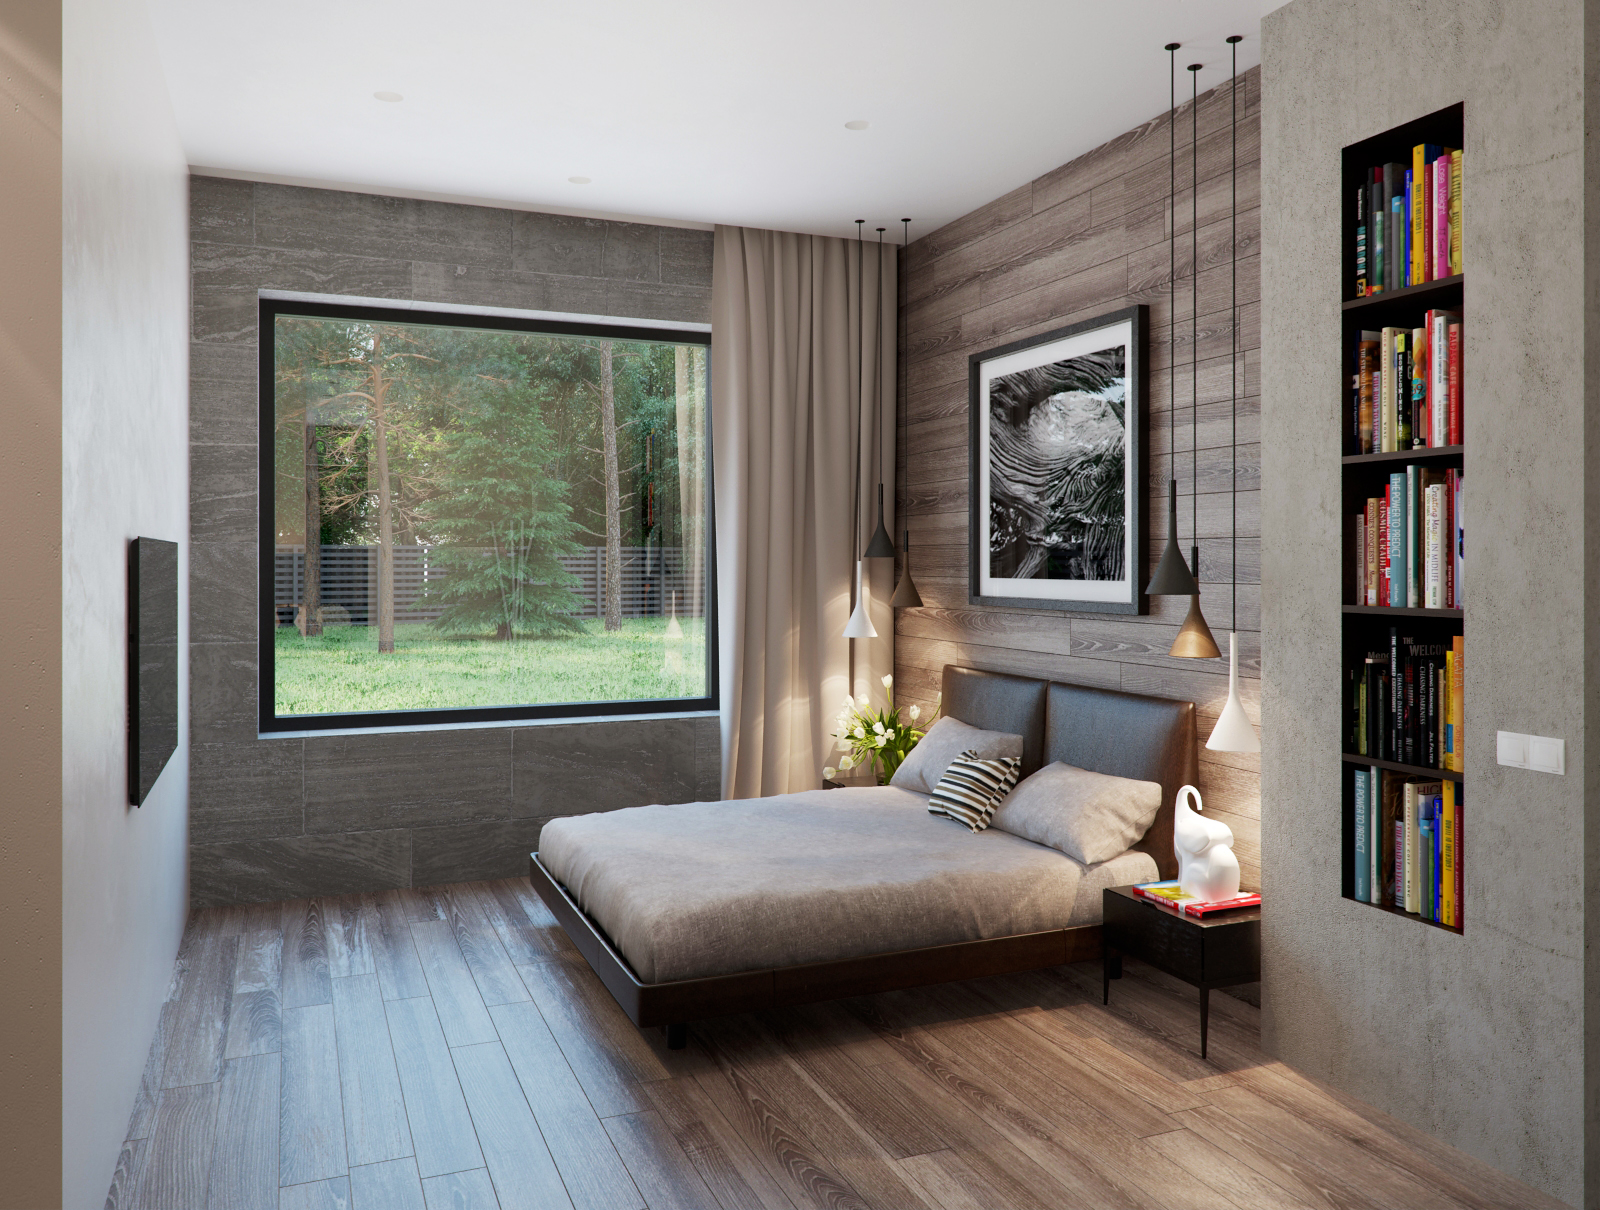 Wedo thiết kế nội thất phòng ngủ đẹp, sang trọng với gỗ và đá